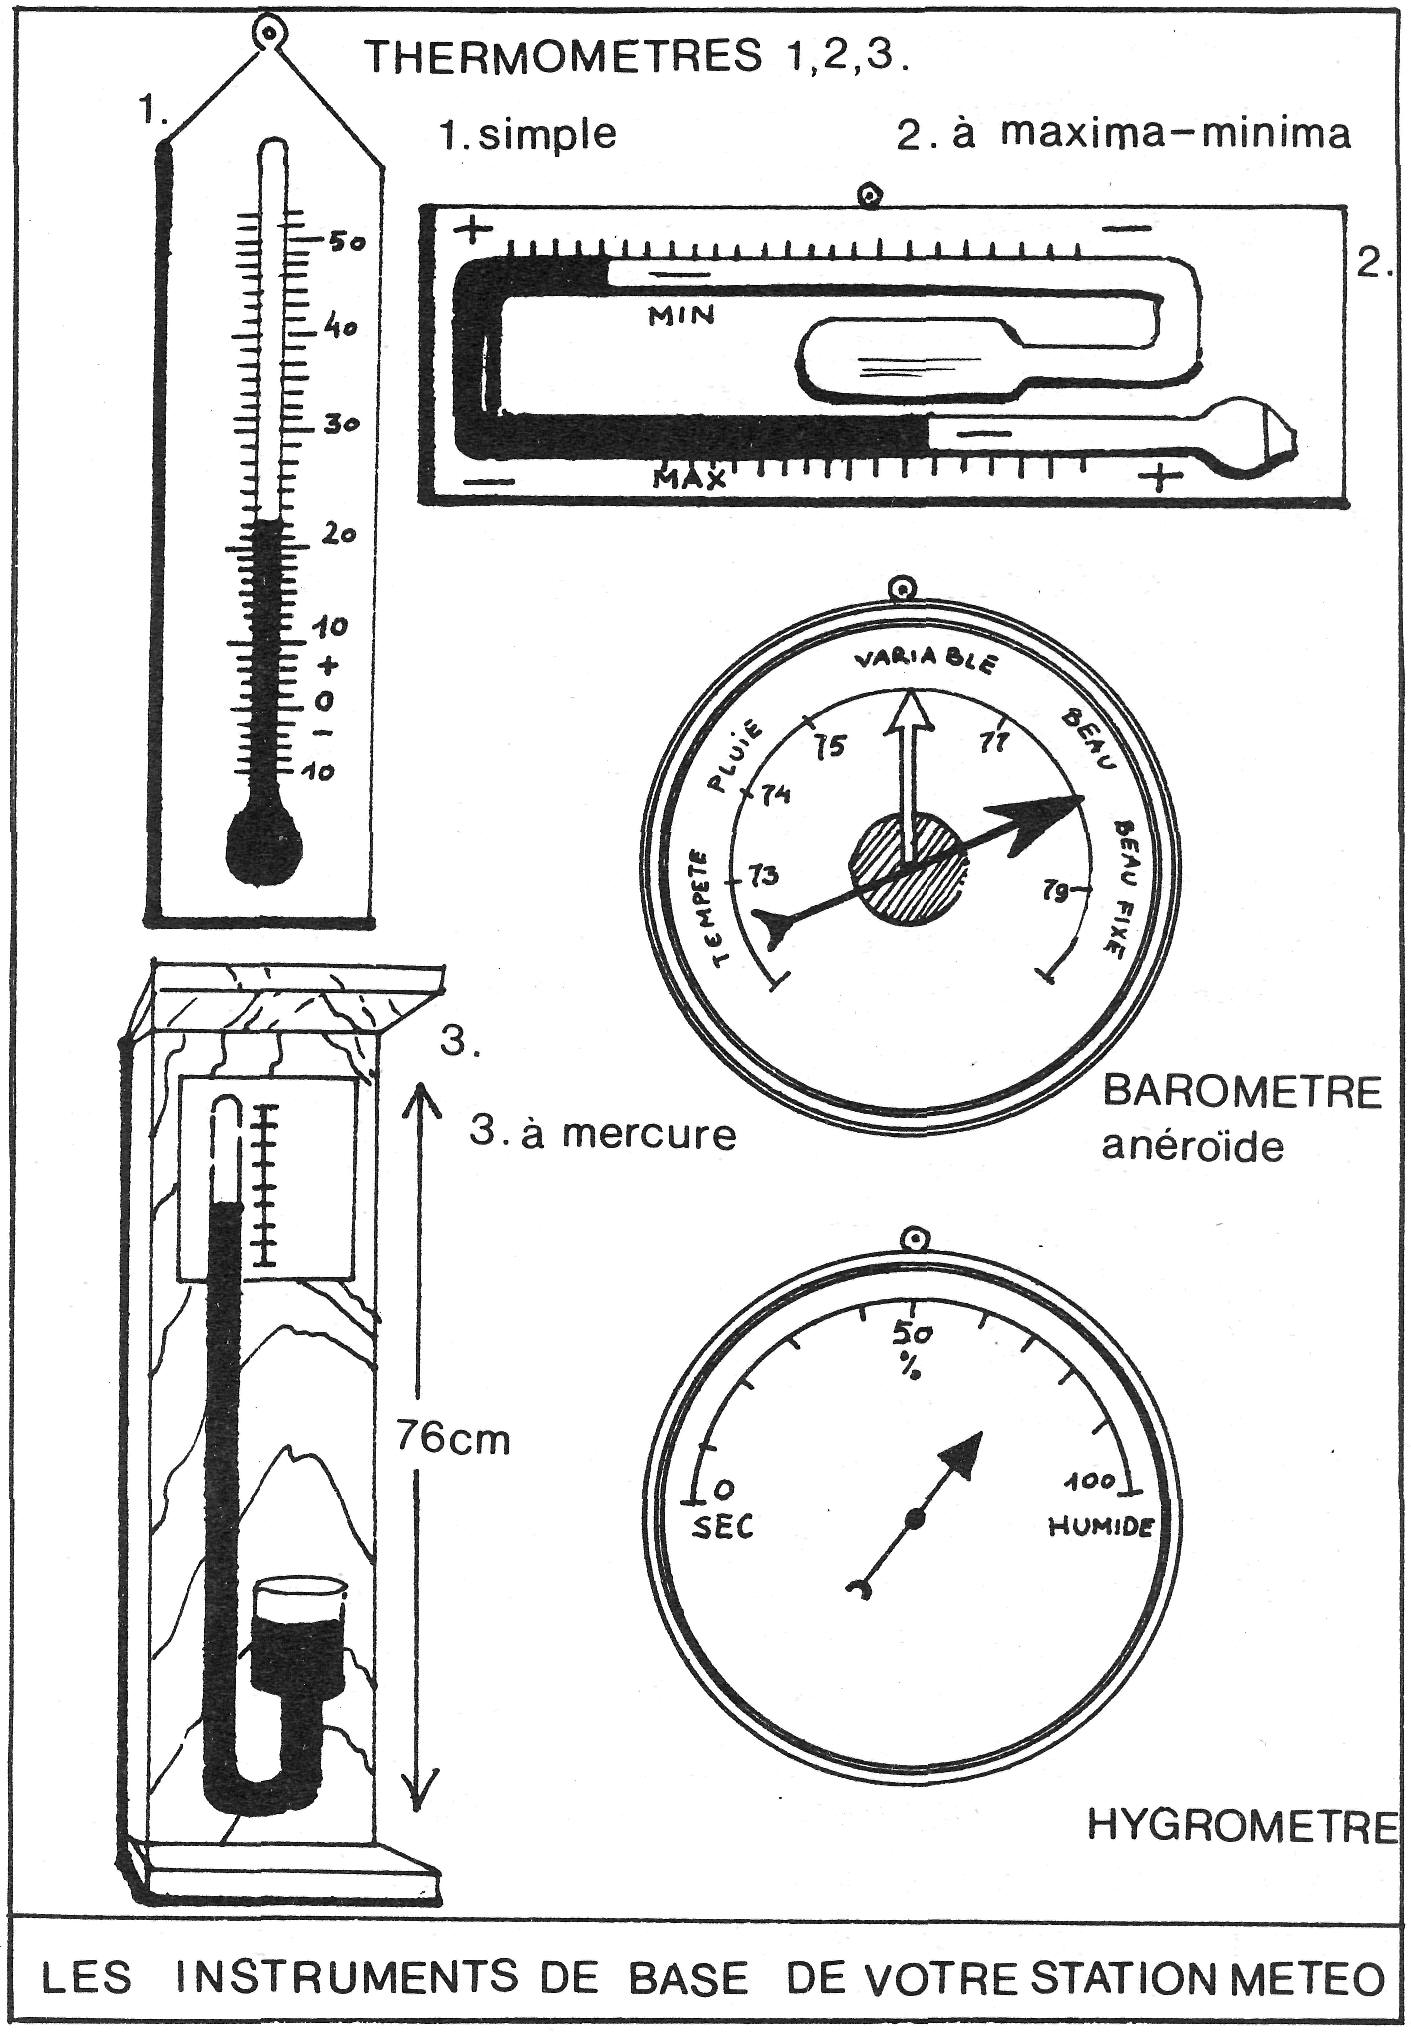 Baromètre à Cadran Analogique de Station Météo avec Thermomètre Hygromètre  Mesures de Pression Atmosphérique Simplicité et Lisibilité Facile 